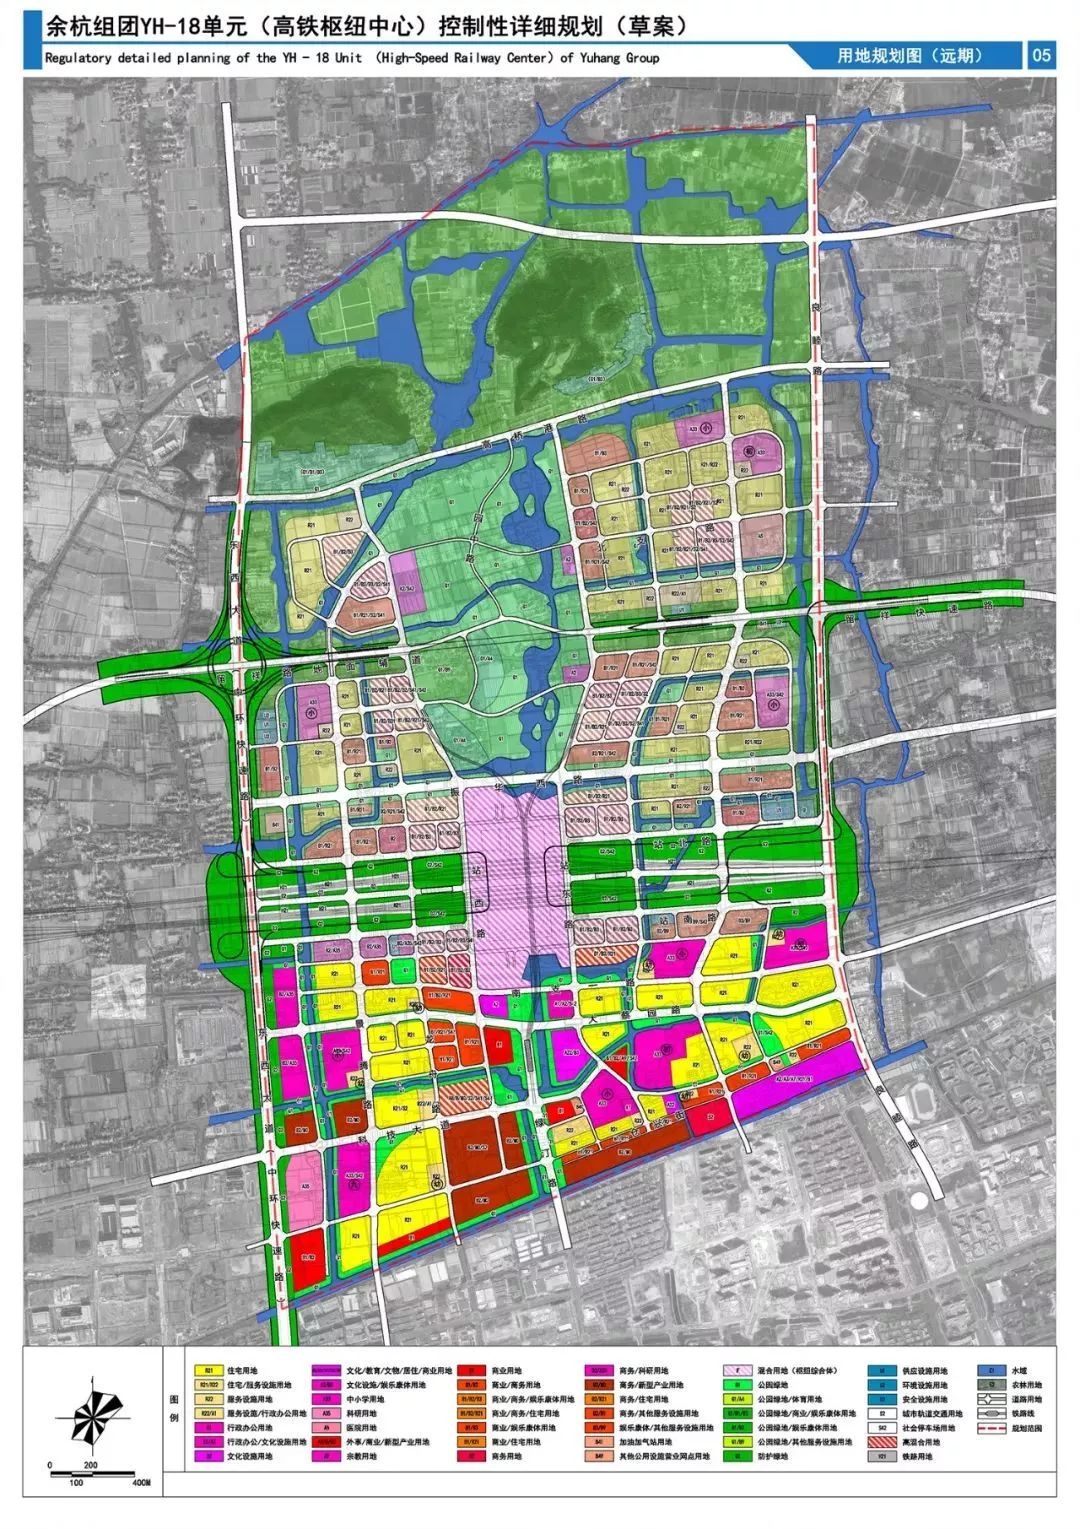 本次规划区域位于 未来科技城北部仓前街道,规划范围北至吴山,寡山